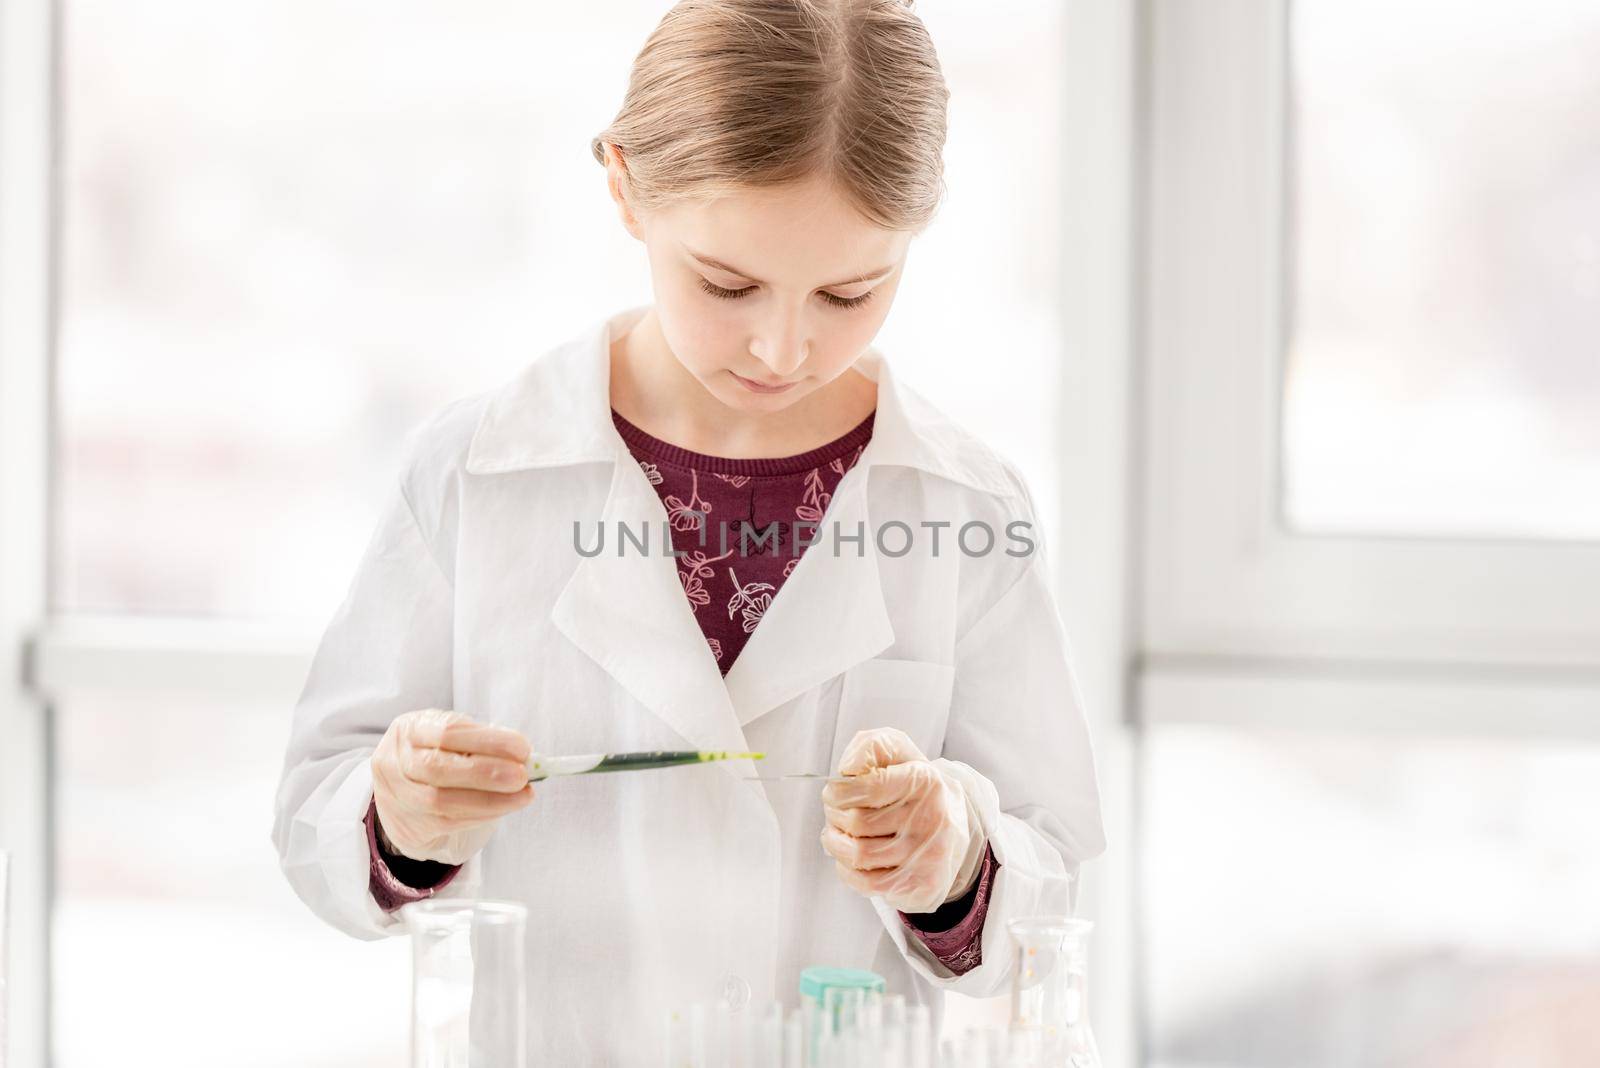 Girl on chemistry lesson by tan4ikk1